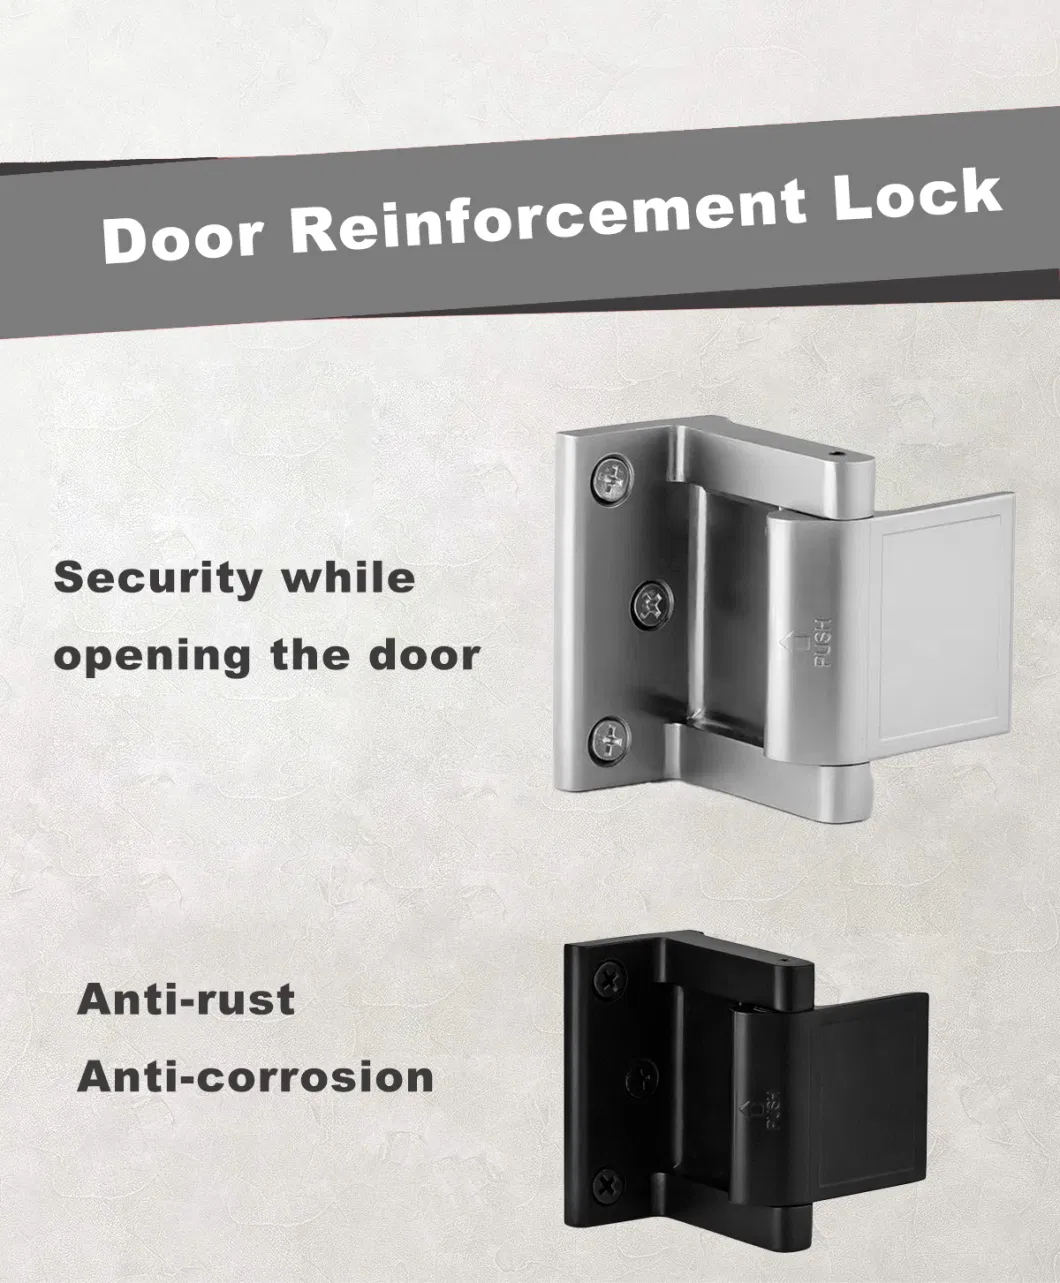 Home Security Door Lock Reinforcement Privacy Child Safety Home Security Door Lock